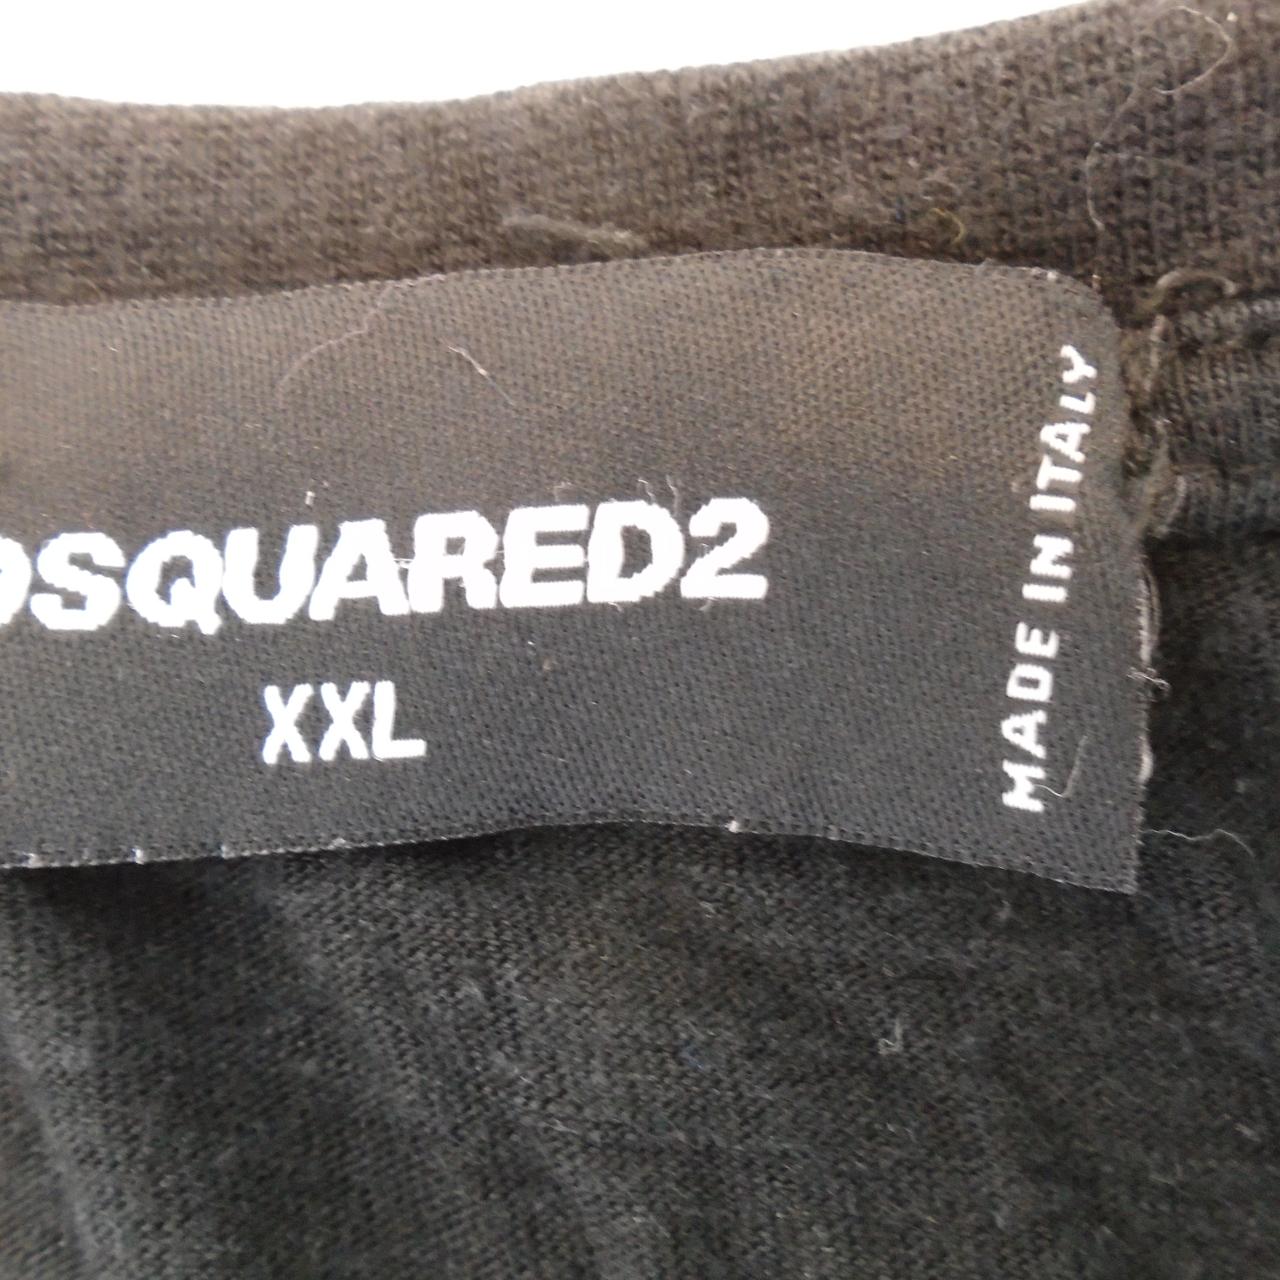 Herren-T-Shirt Dsquared2. Schwarz. XXL. Gebraucht. Gut